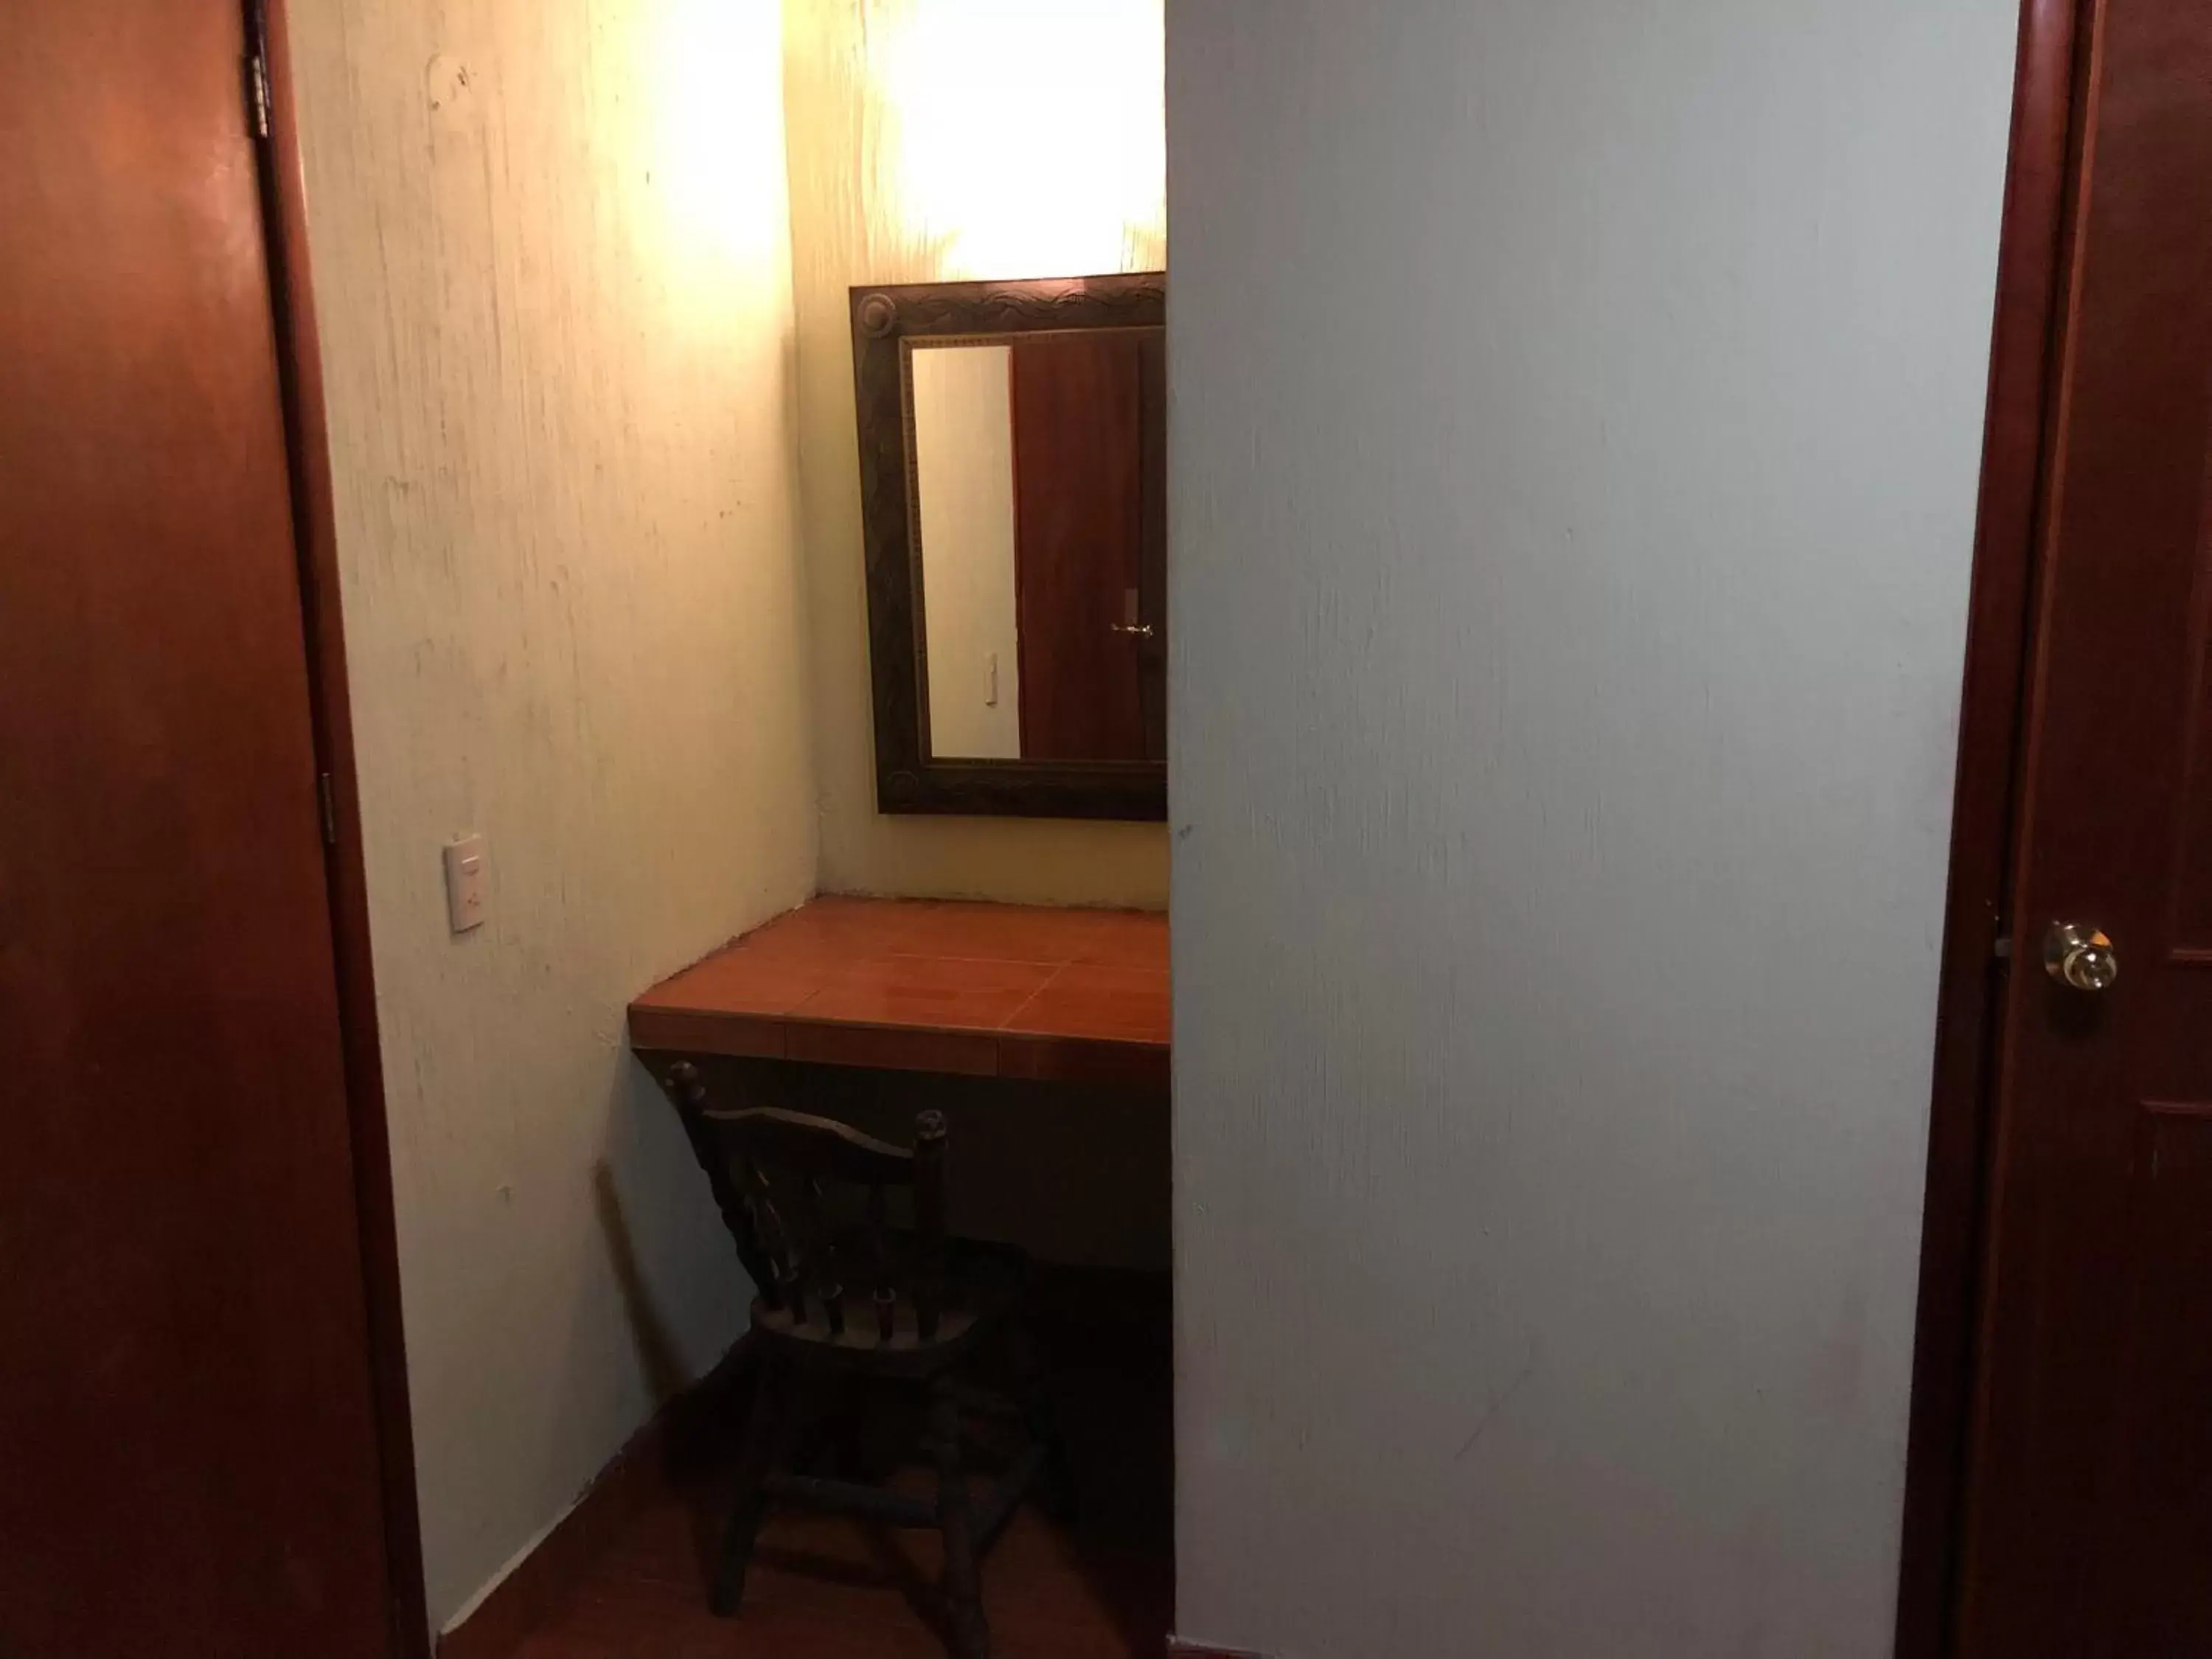 Photo of the whole room, Bathroom in Hotel Hacienda el Ceboruco